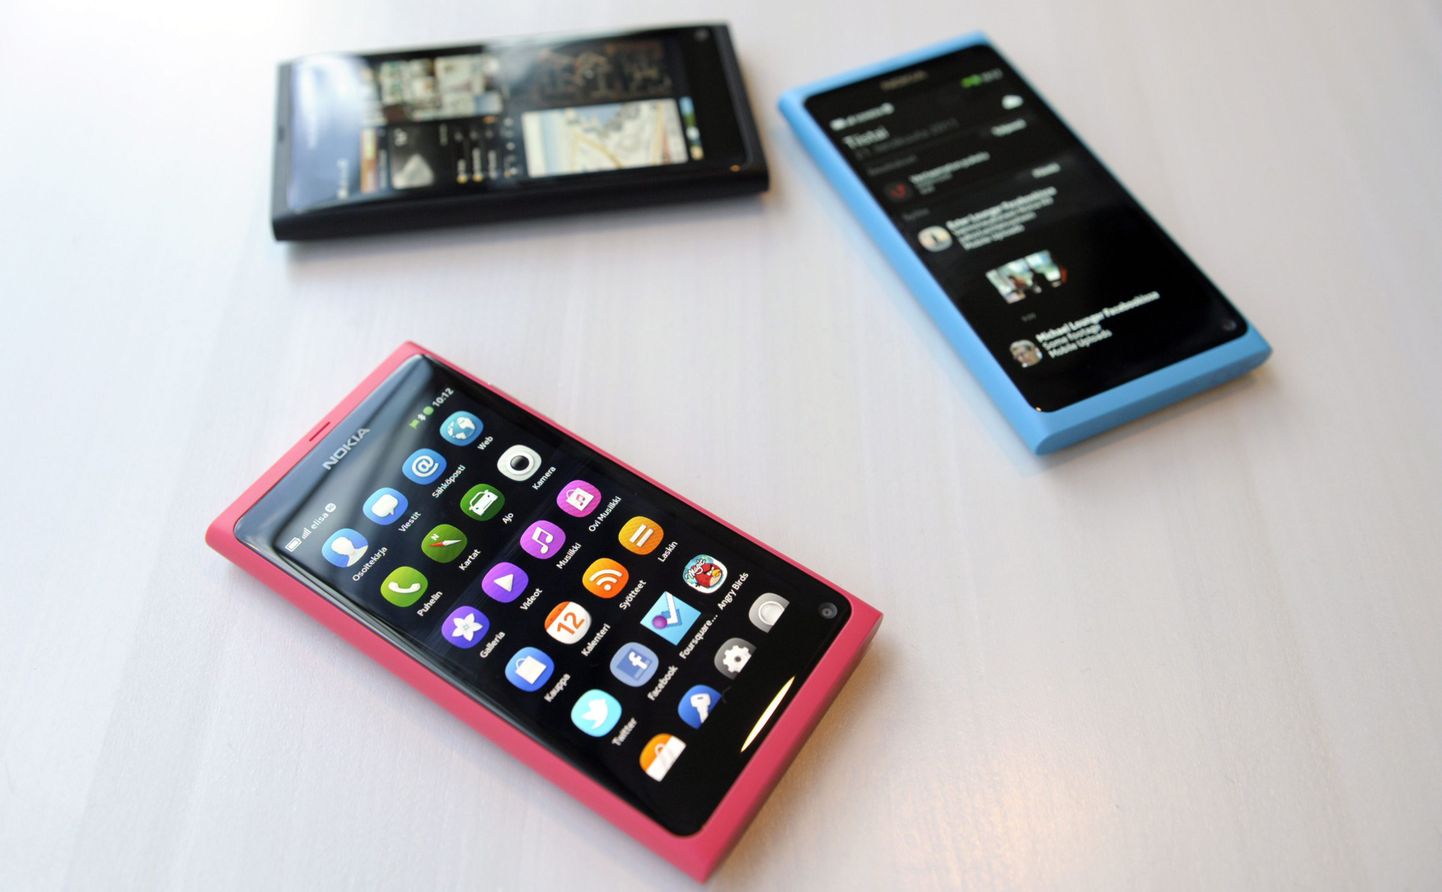 Pildil Nokia üks uuemaid mudeleid Nokia N9, kus Microsofti tehnoloogiat veel sees pole